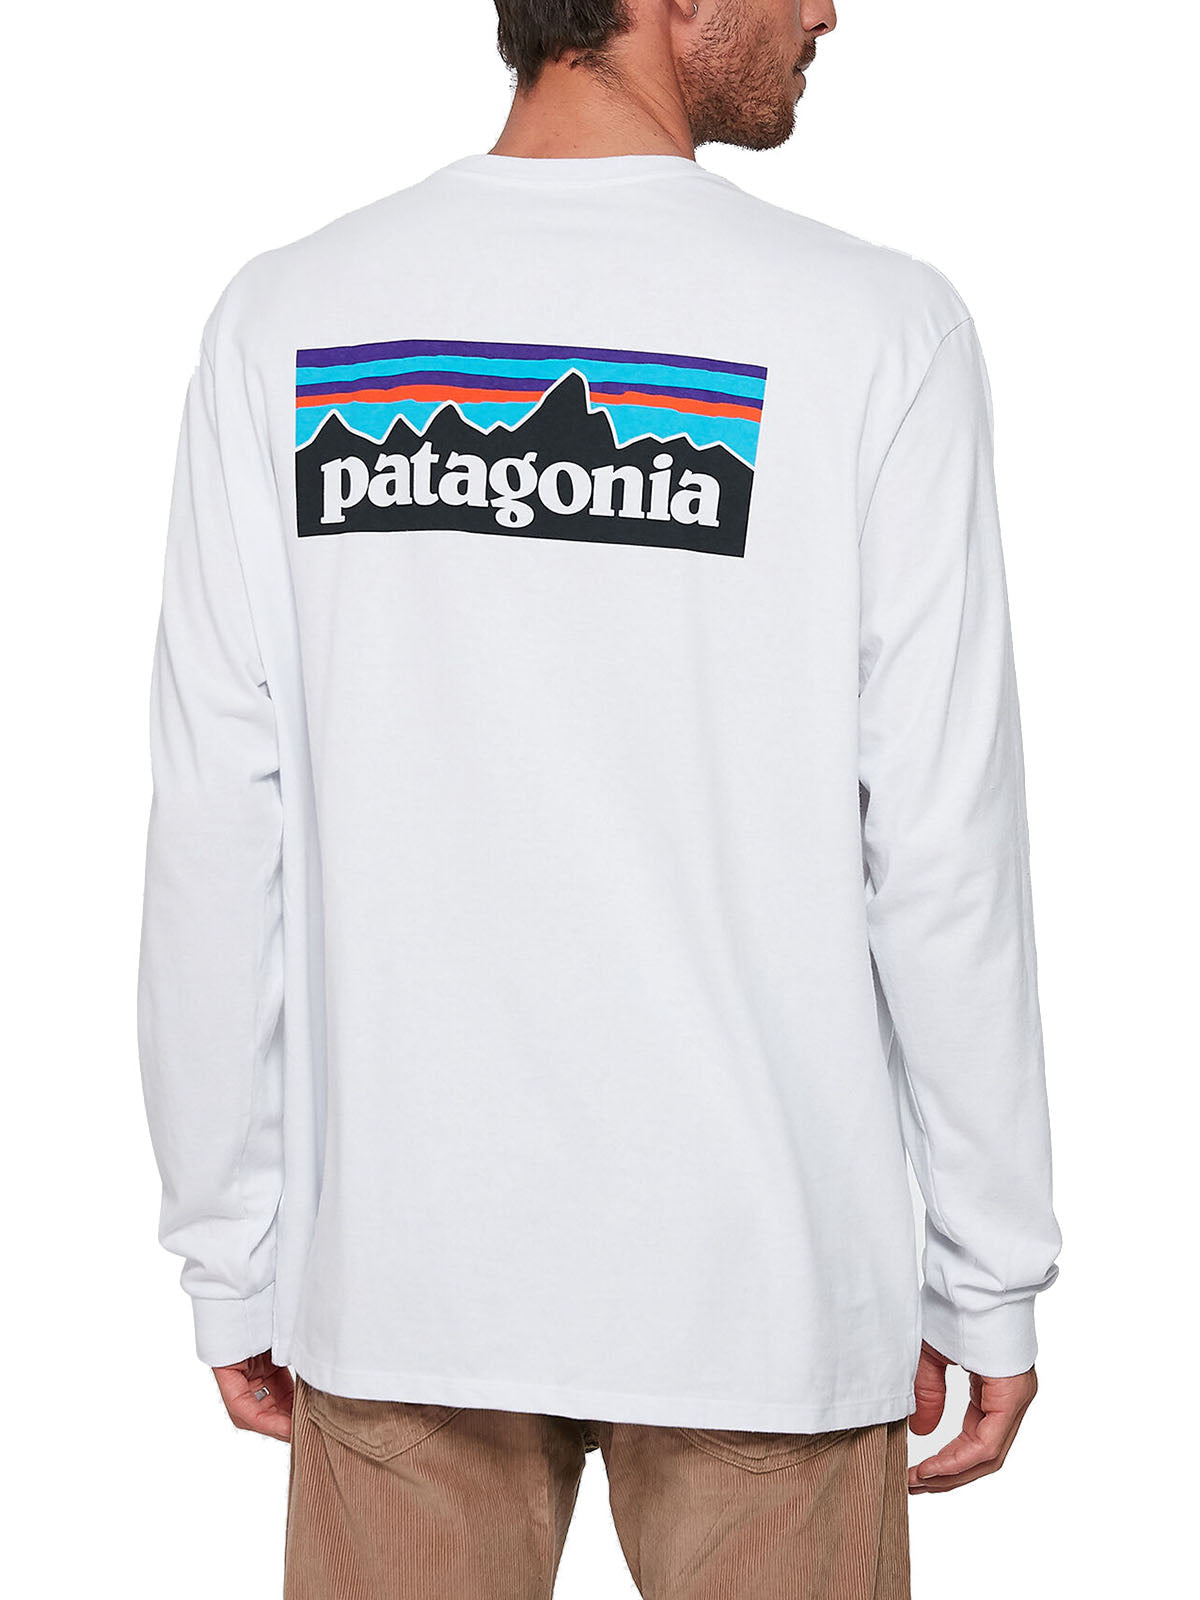 T-shirt Uomo Patagonia - Long-Sleeved P-6 Logo Responsibili-Tee® - Bianco